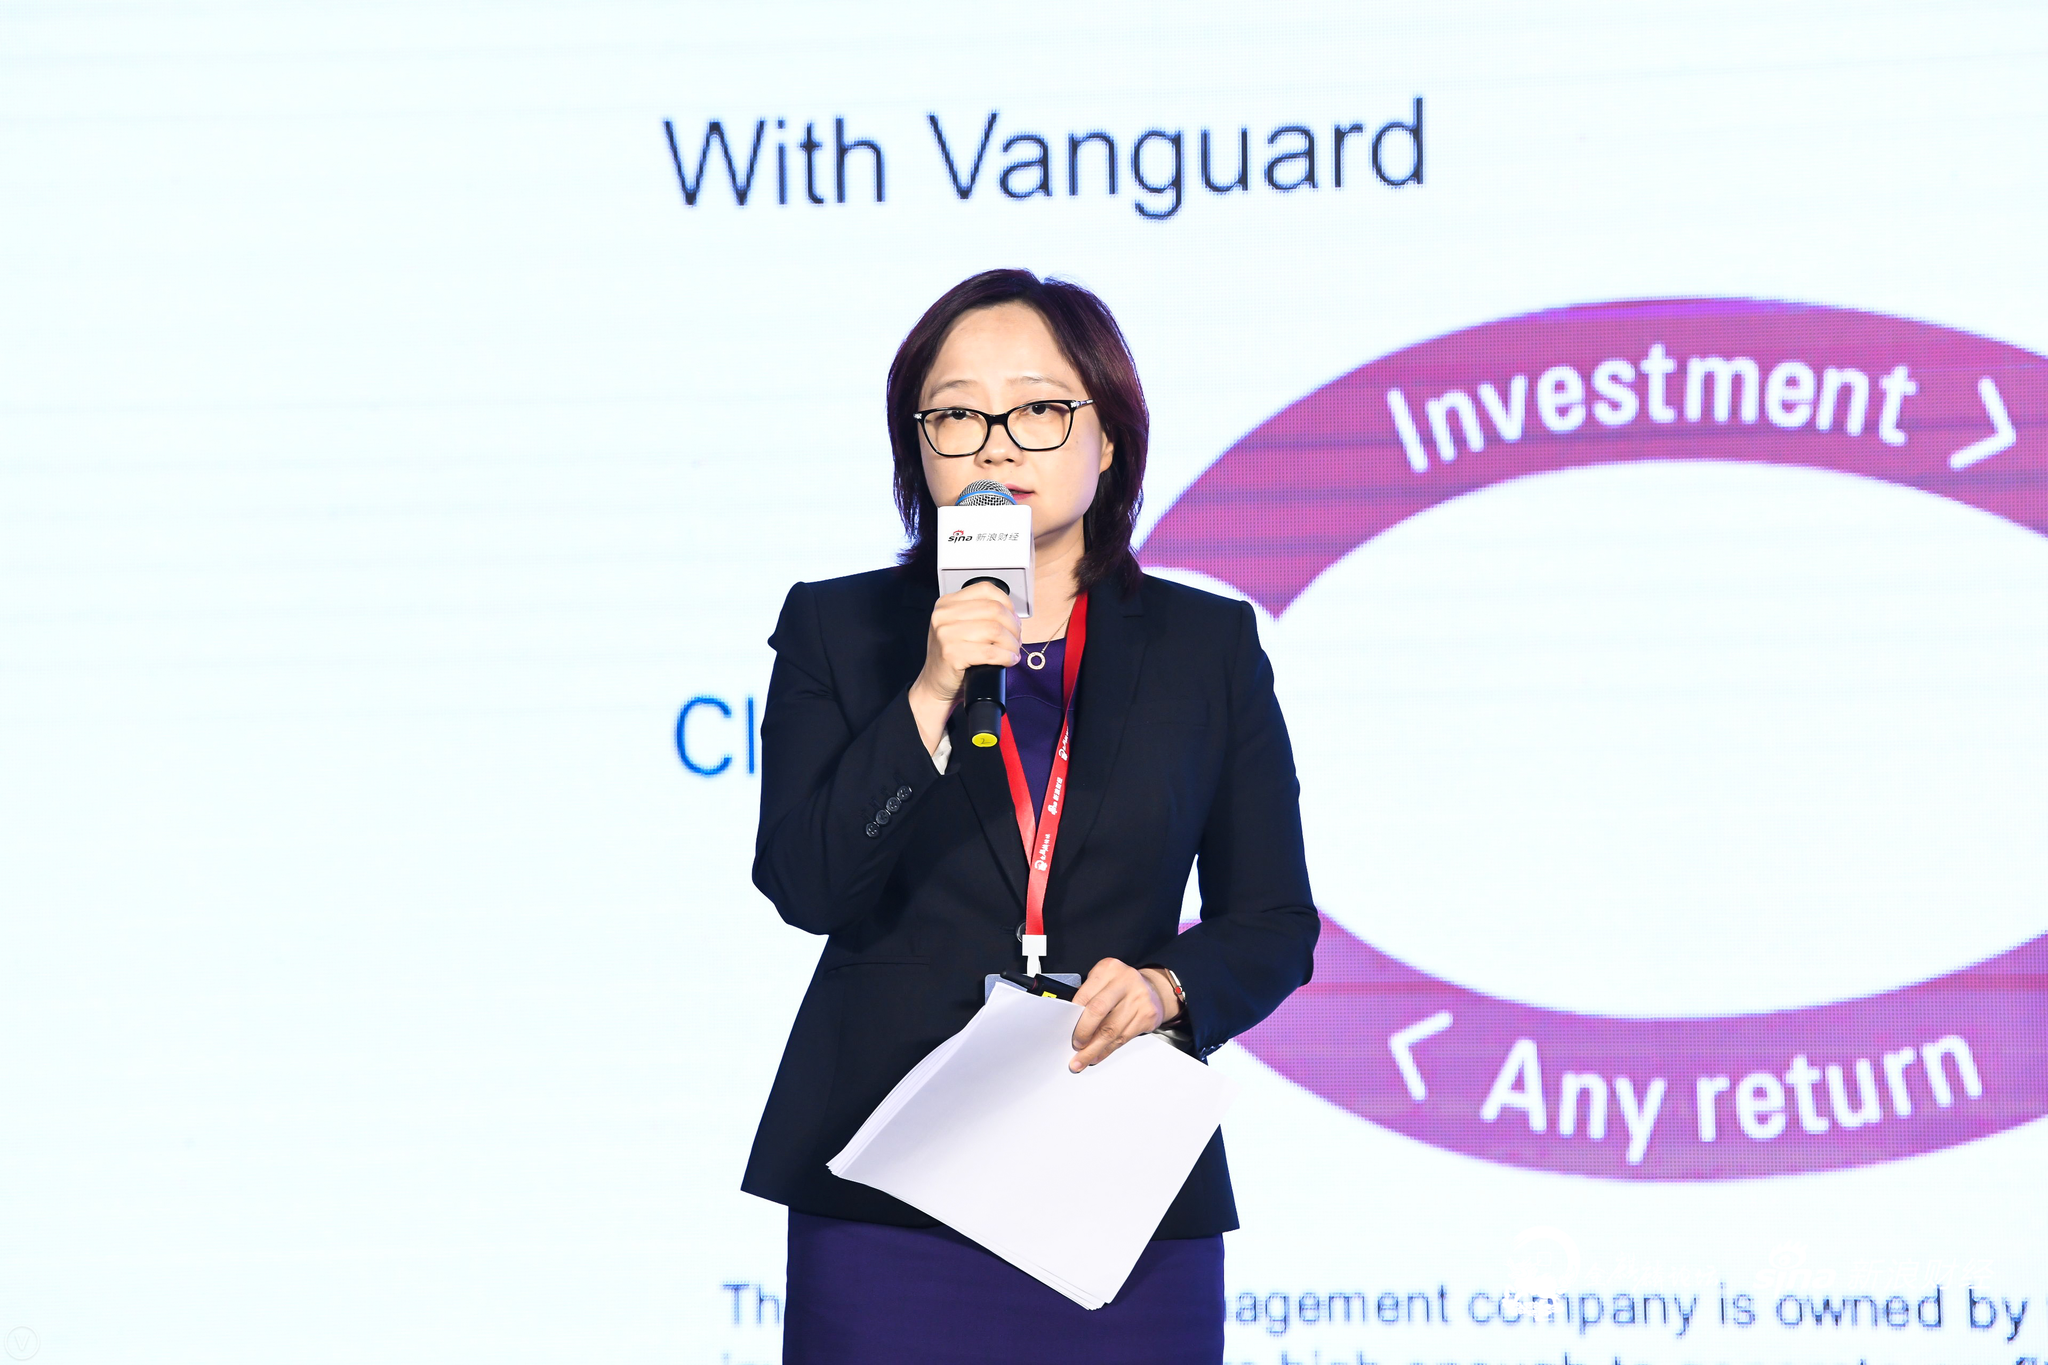 　　2019年11月28日，Vanguard集团董事总经理、中国区投资管理部主管浦彦女士出席2019新浪金麒麟论坛·ESG峰会，发表题为“Vanguard’s approach to ESG”的主题演讲（图片来源：新浪财经）